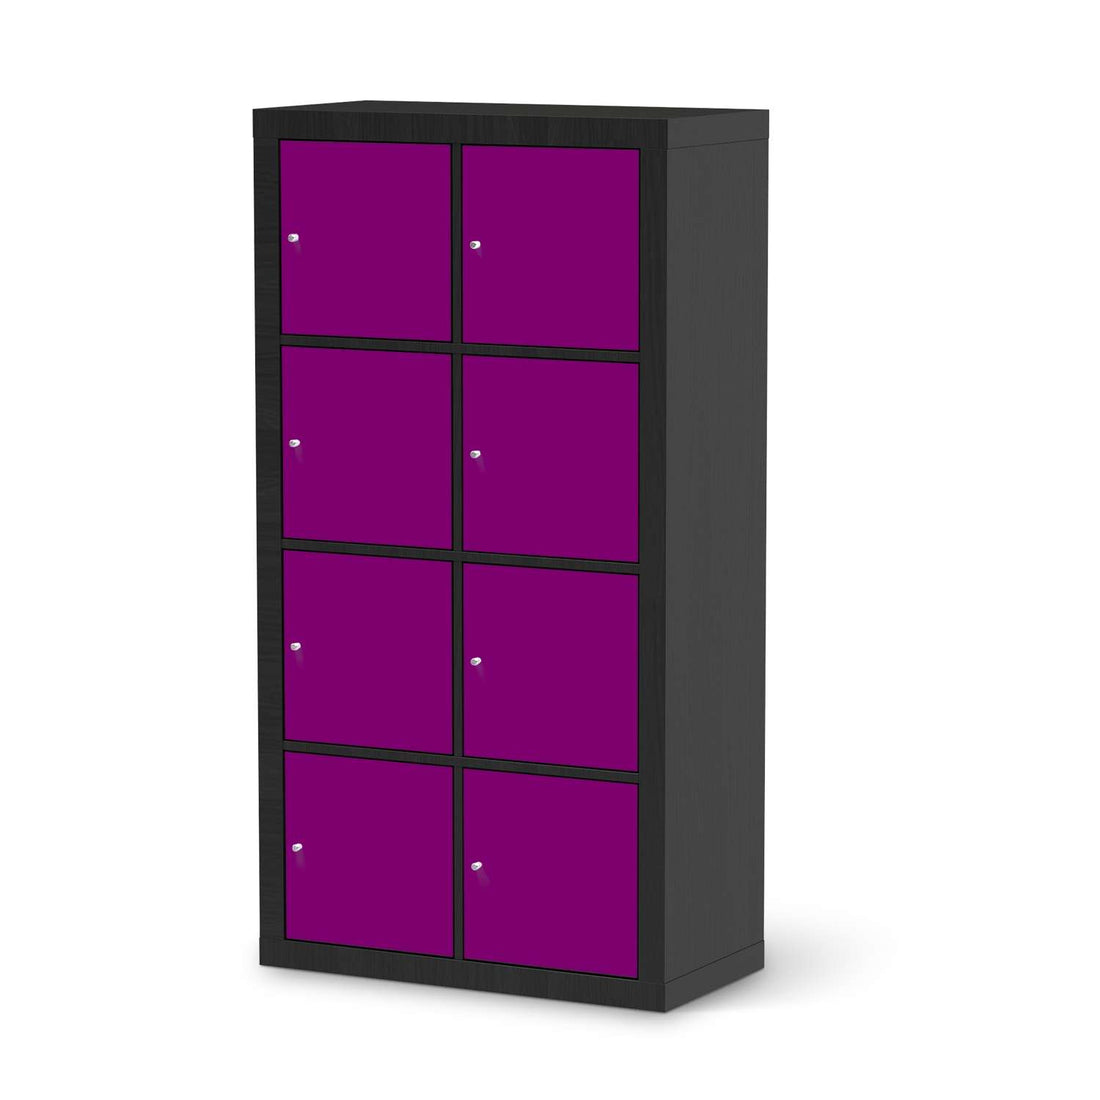 Folie für Möbel Flieder Dark - IKEA Kallax Regal 8 Türen - schwarz